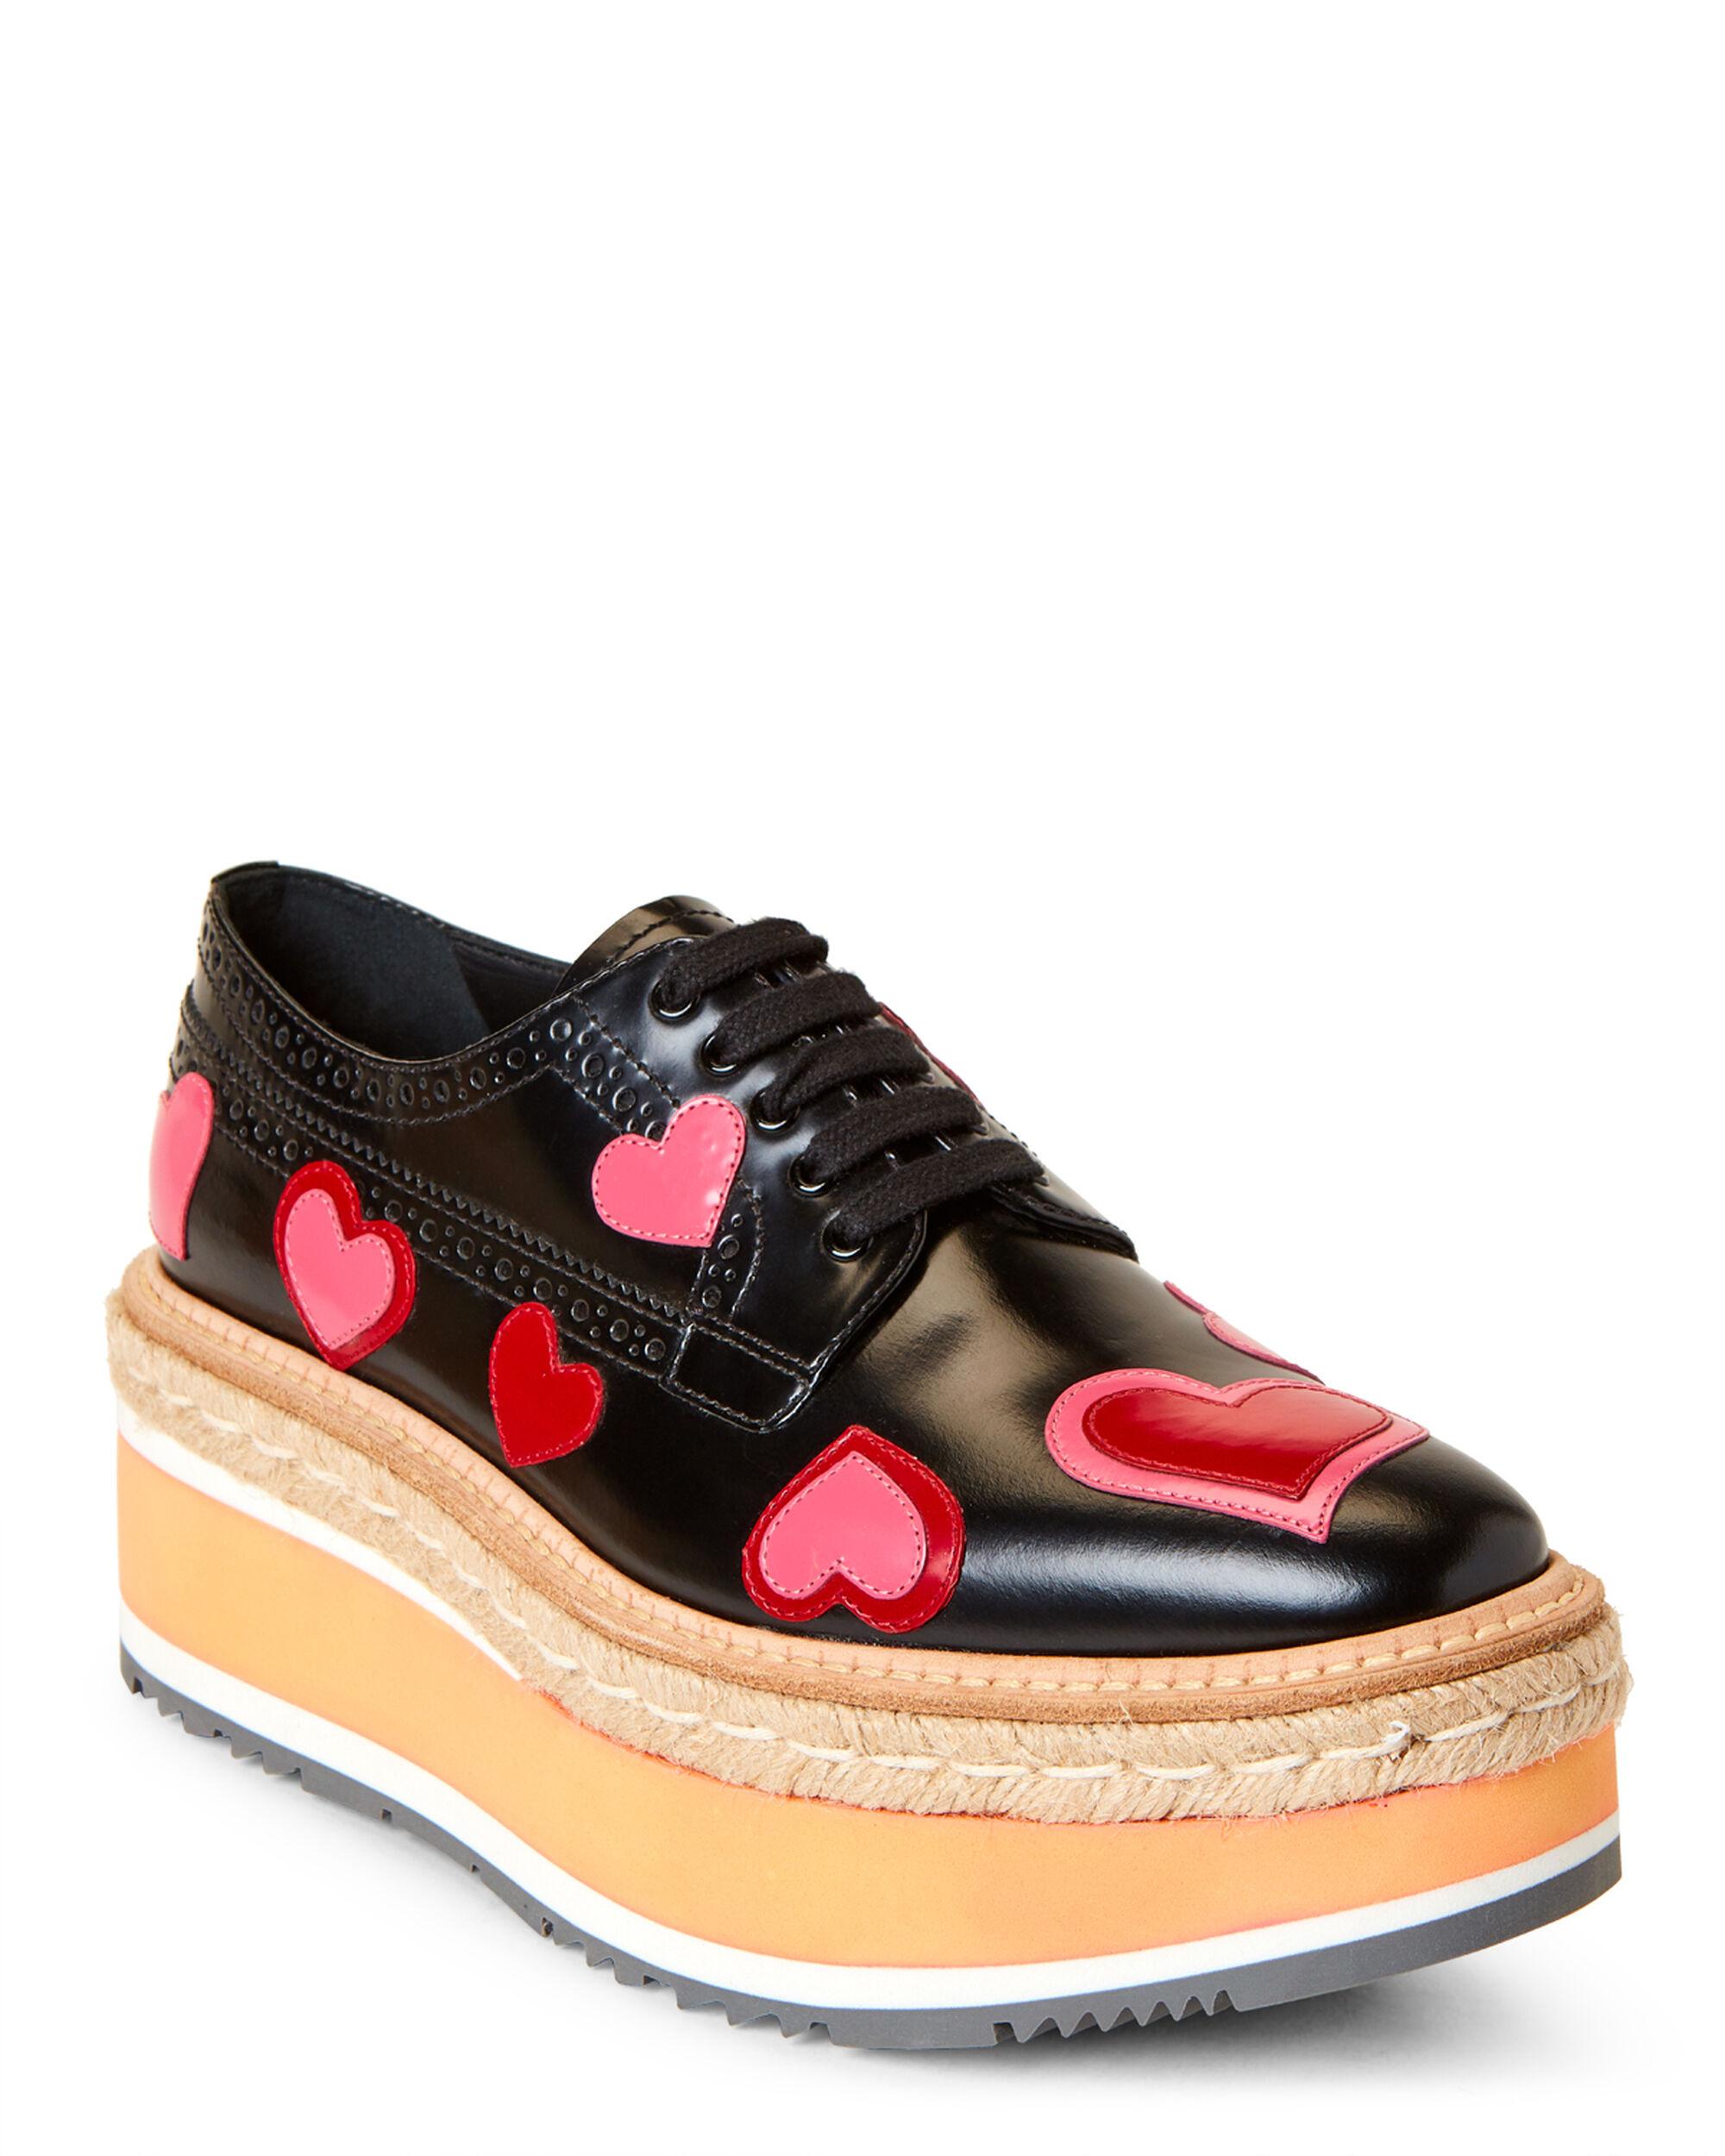 prada heart sneakers